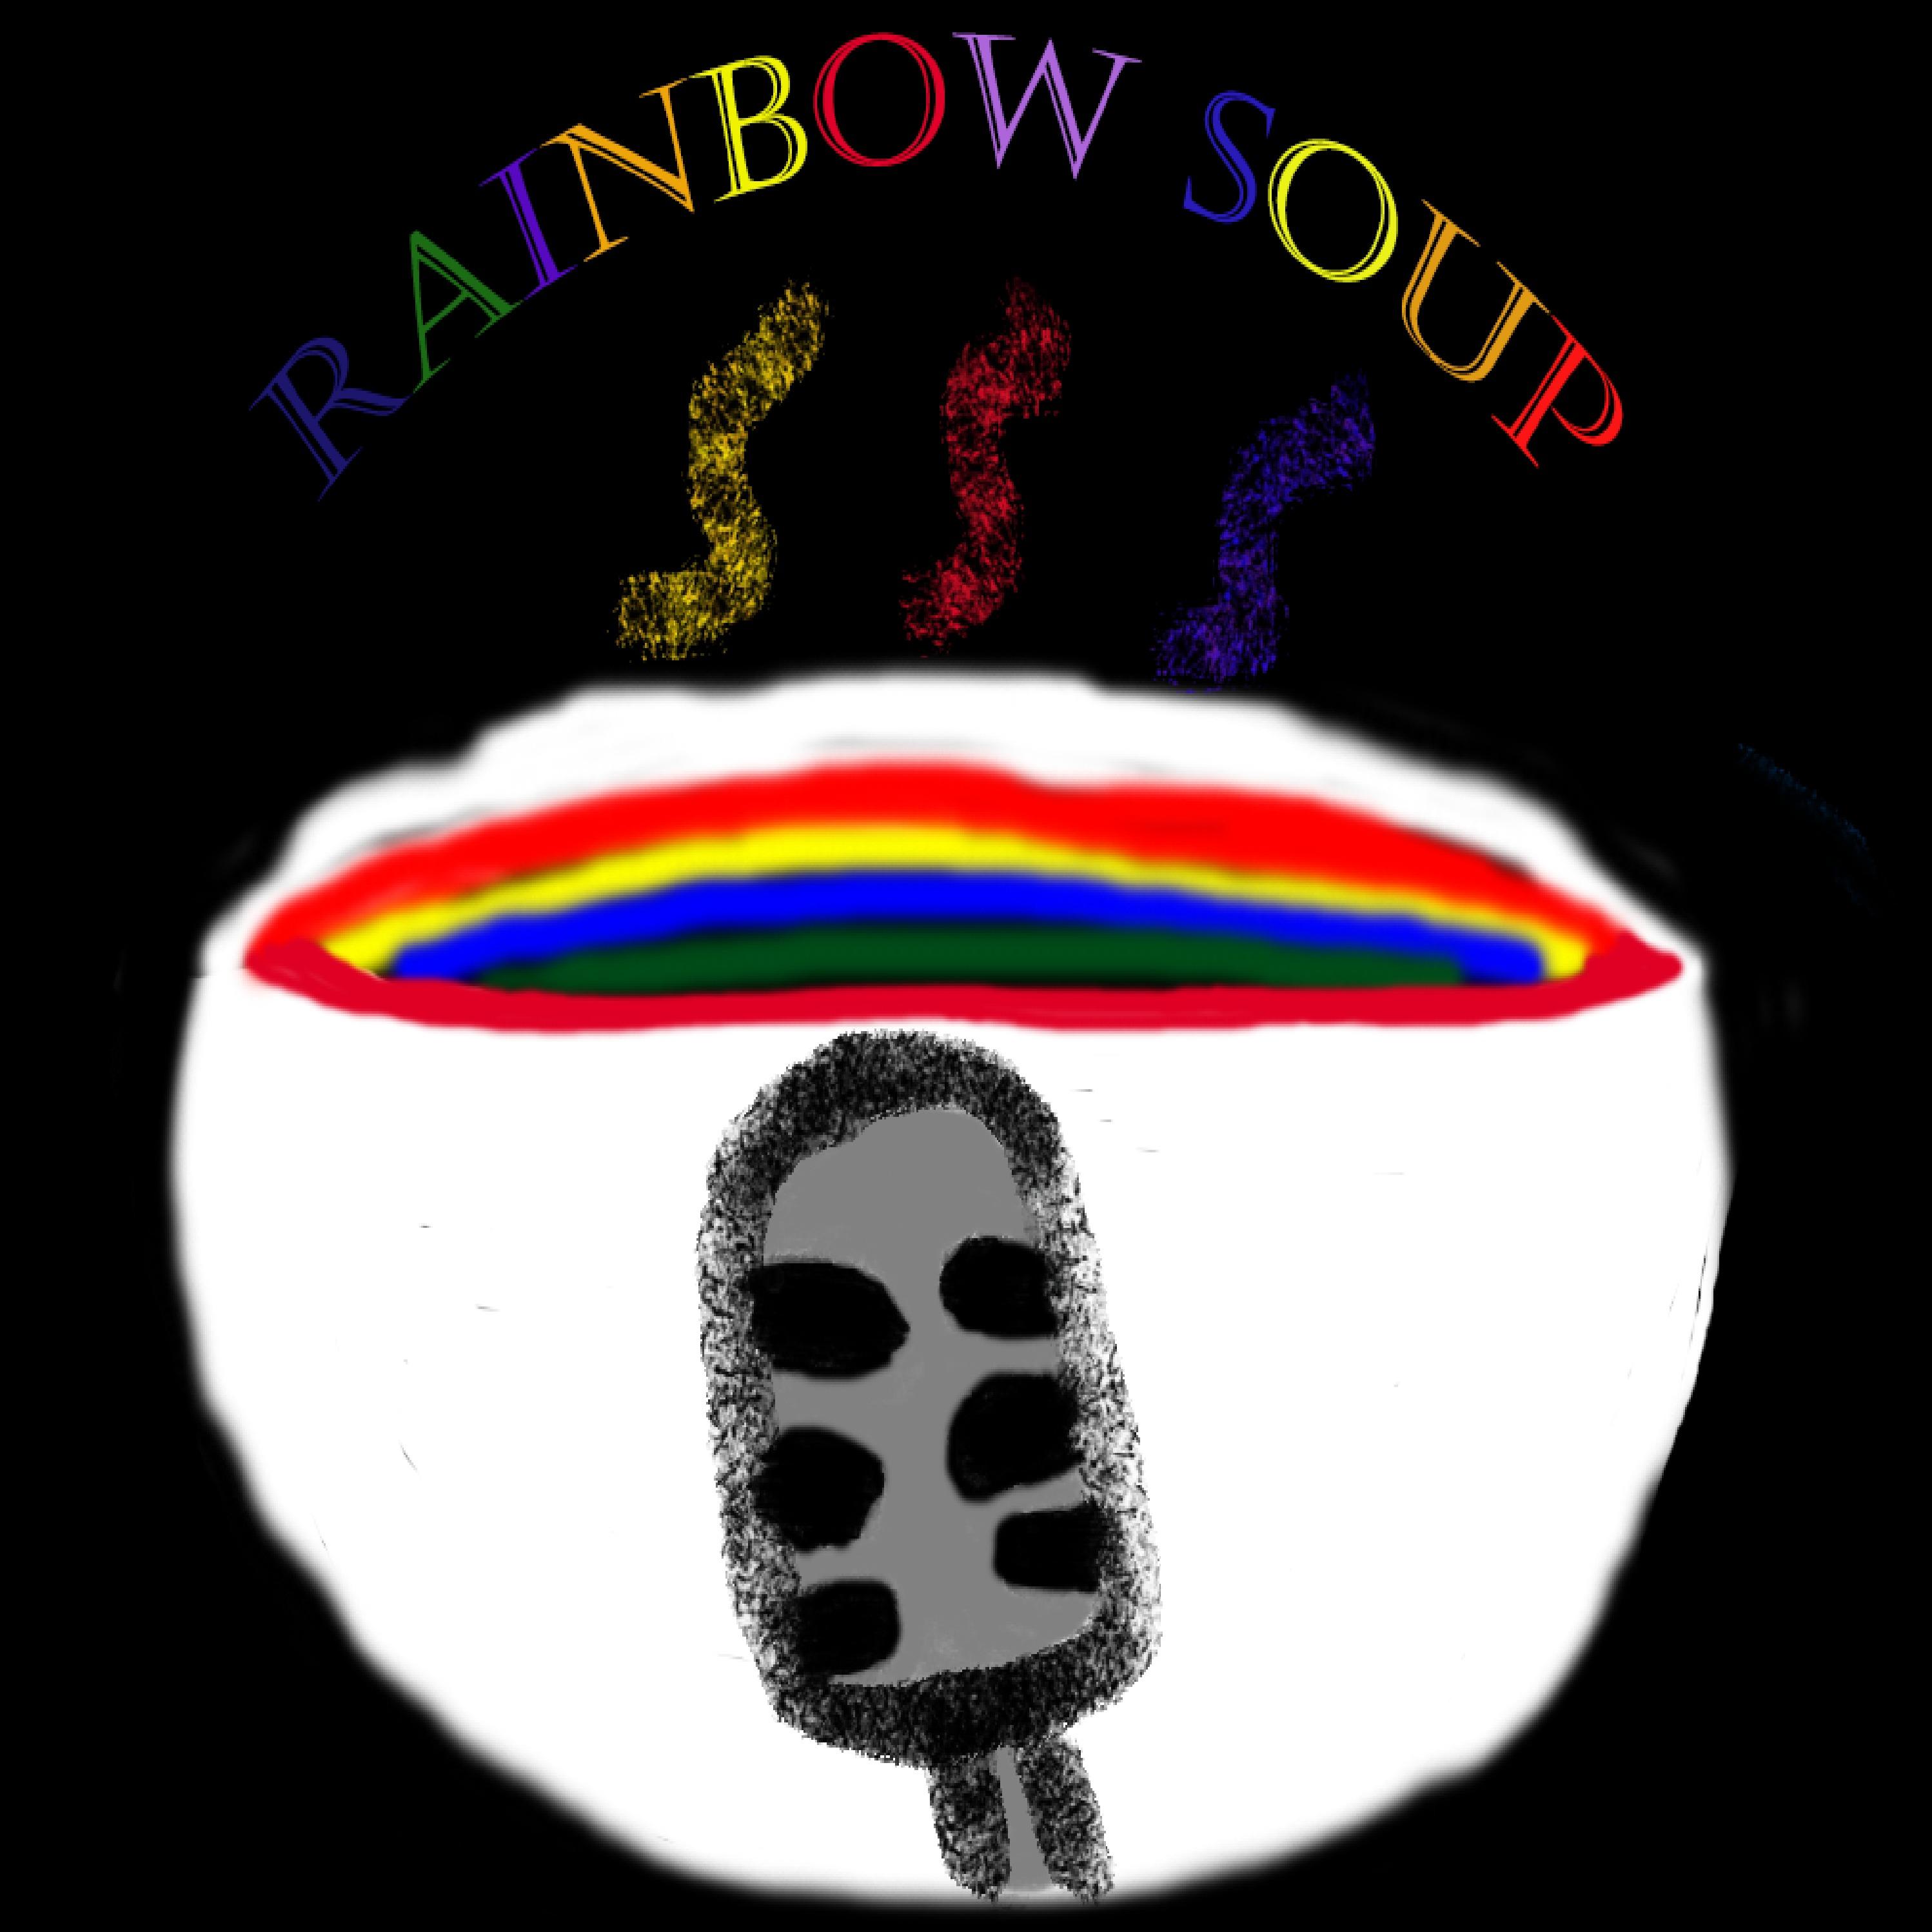 Rainbow Soup Podcast